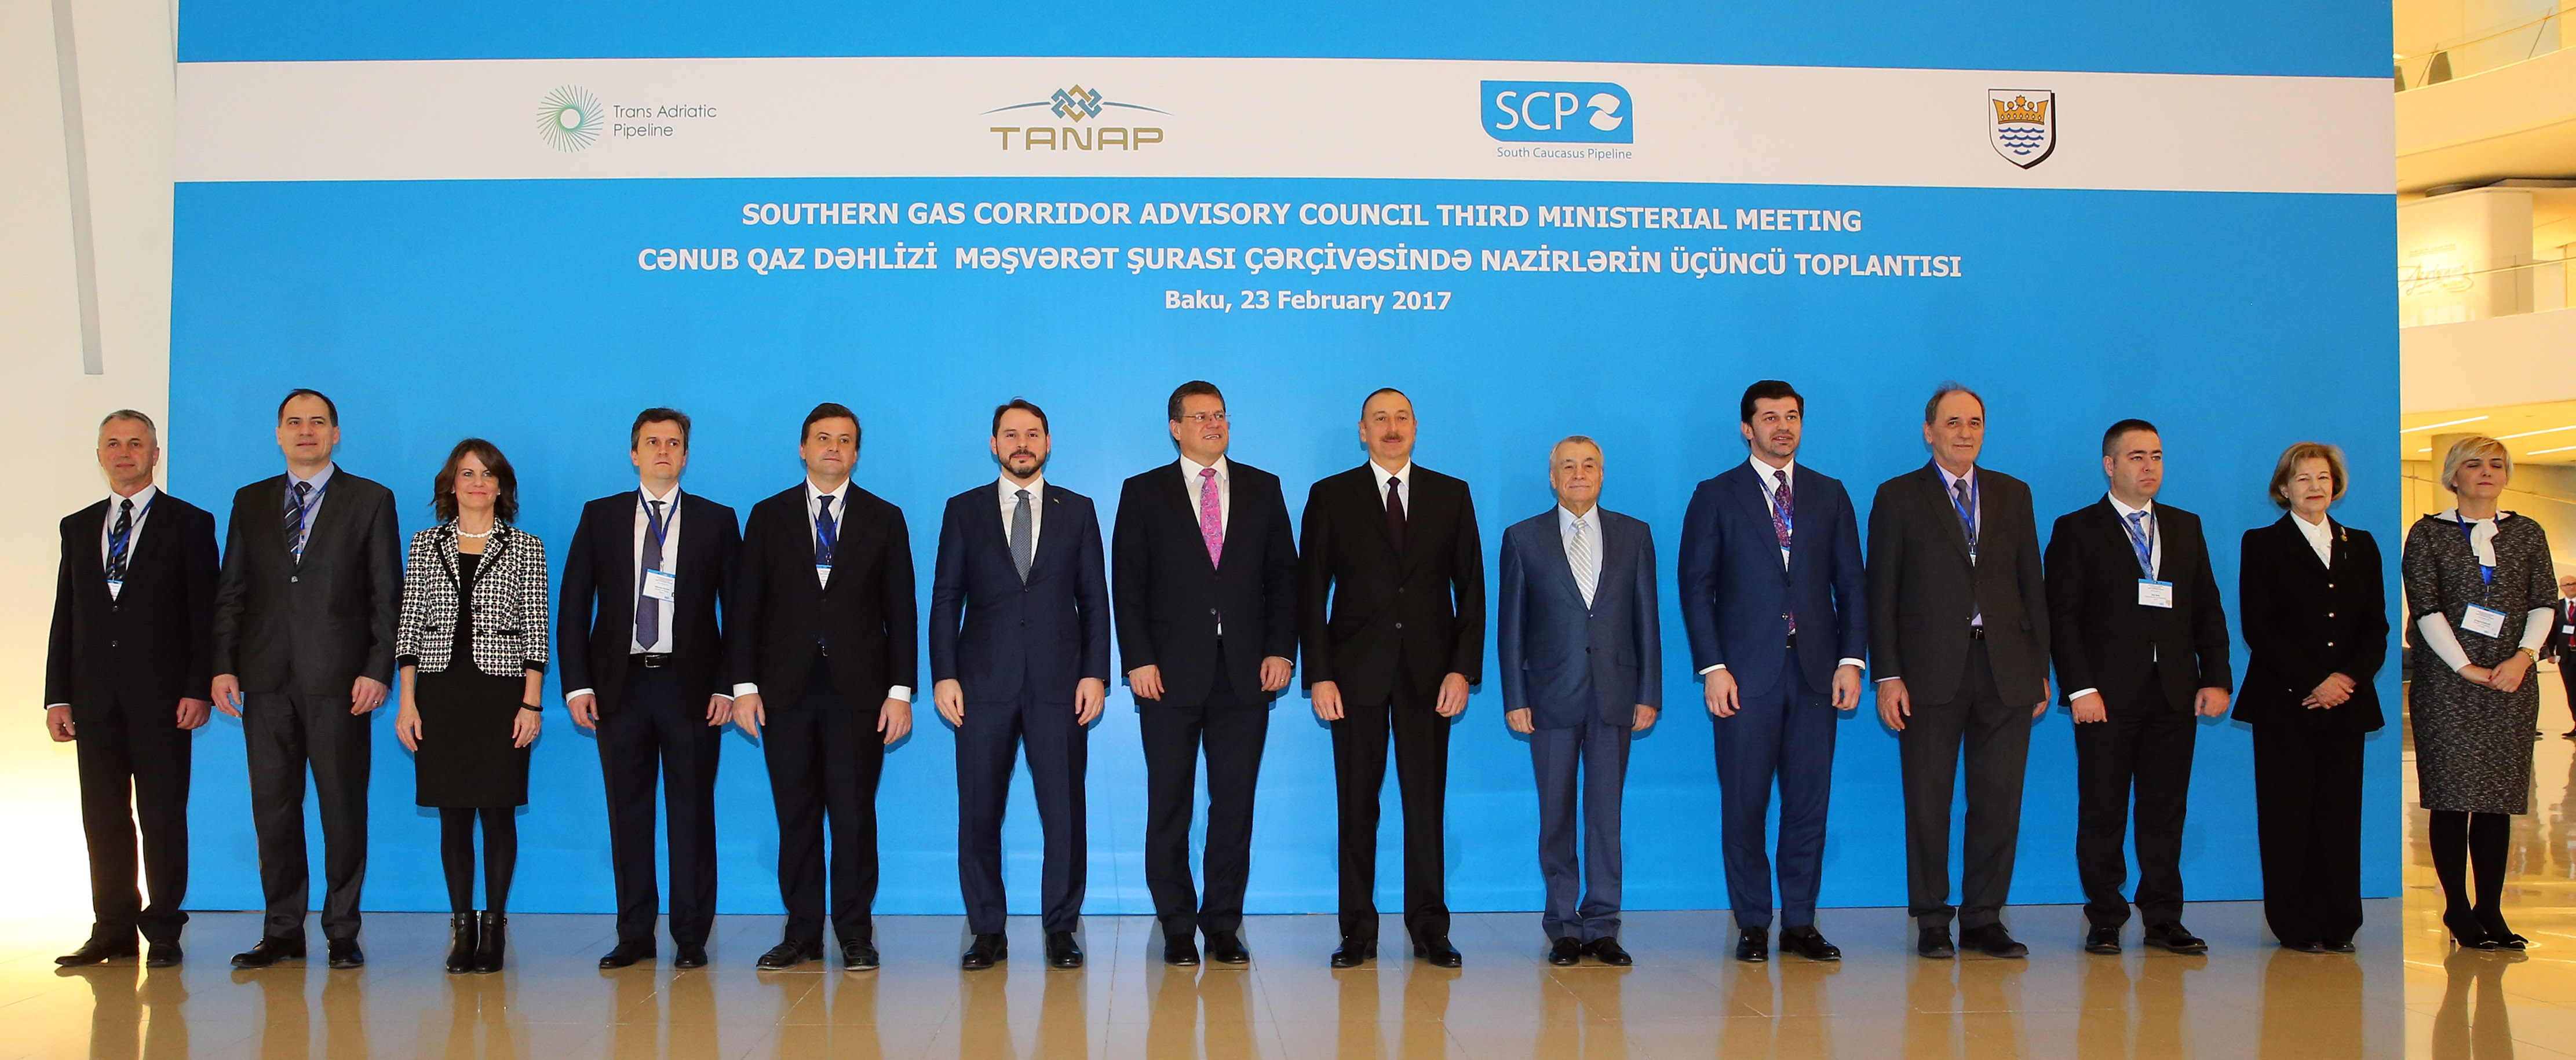 В Баку се провежда Третата министерска среща на Консултативния съвет по Южния газов коридор